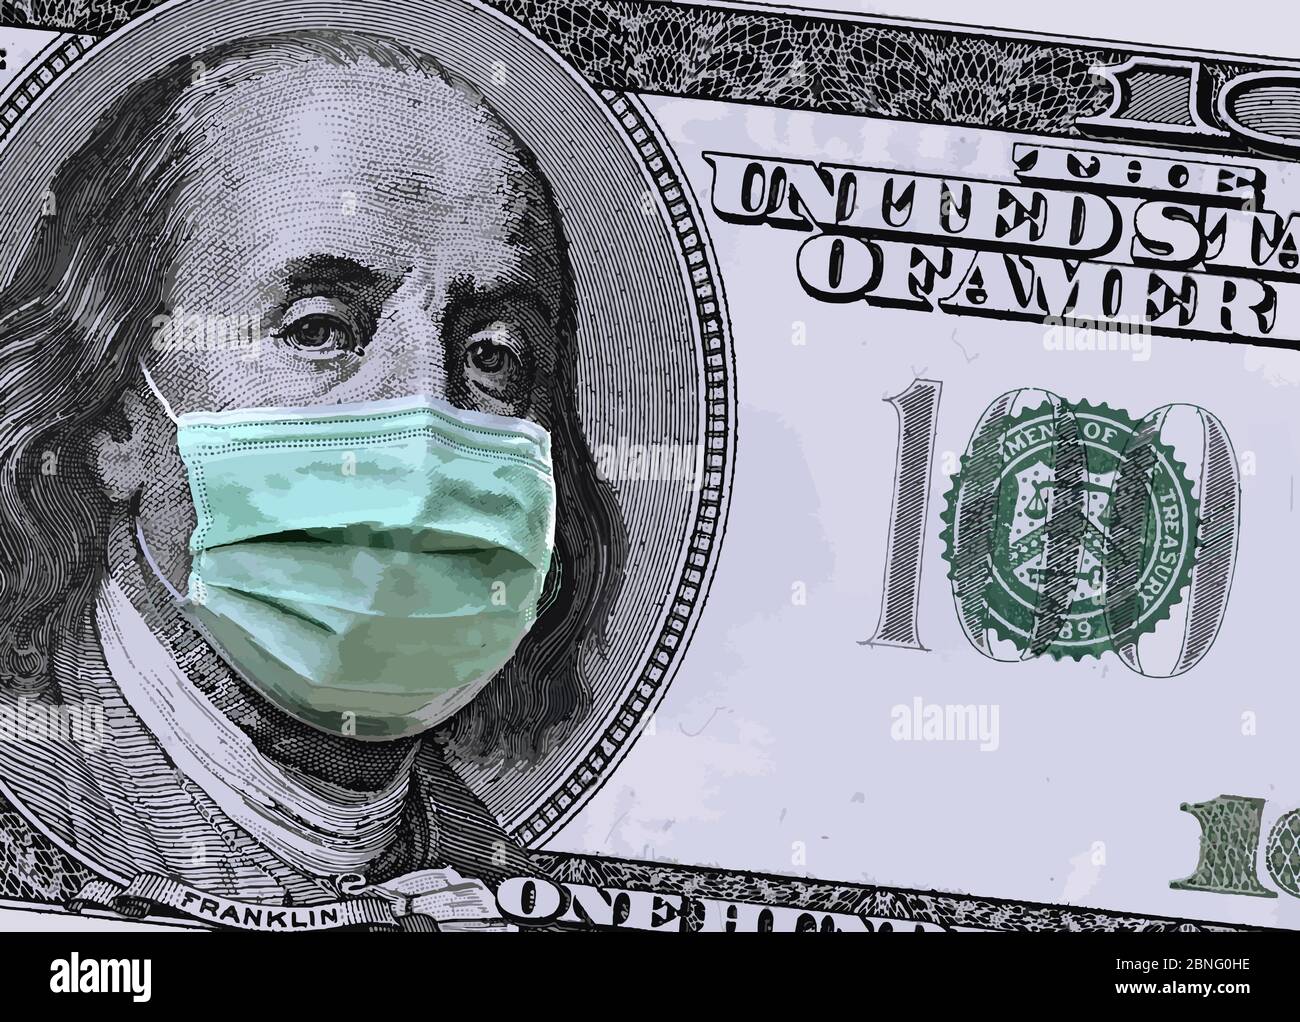 Une facture de 100 dollars montre que Benjamin Franklin porte un masque chirurgical pour se protéger du coronavirus de Covid-19. Ceci est une illustration Illustration de Vecteur